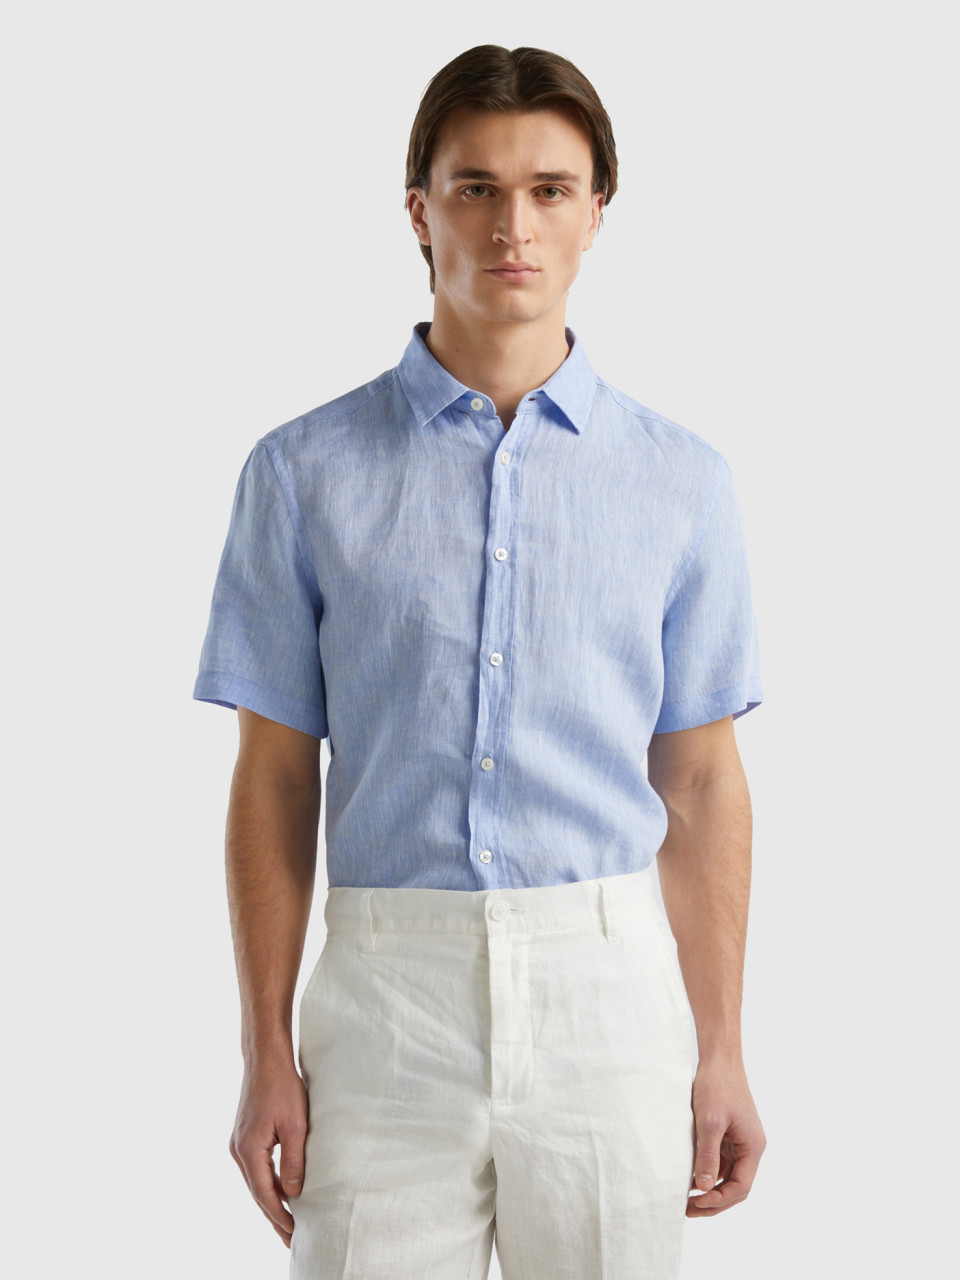 Benetton, 100% Linen Short Sleeve Shirt, Light Blue, Men